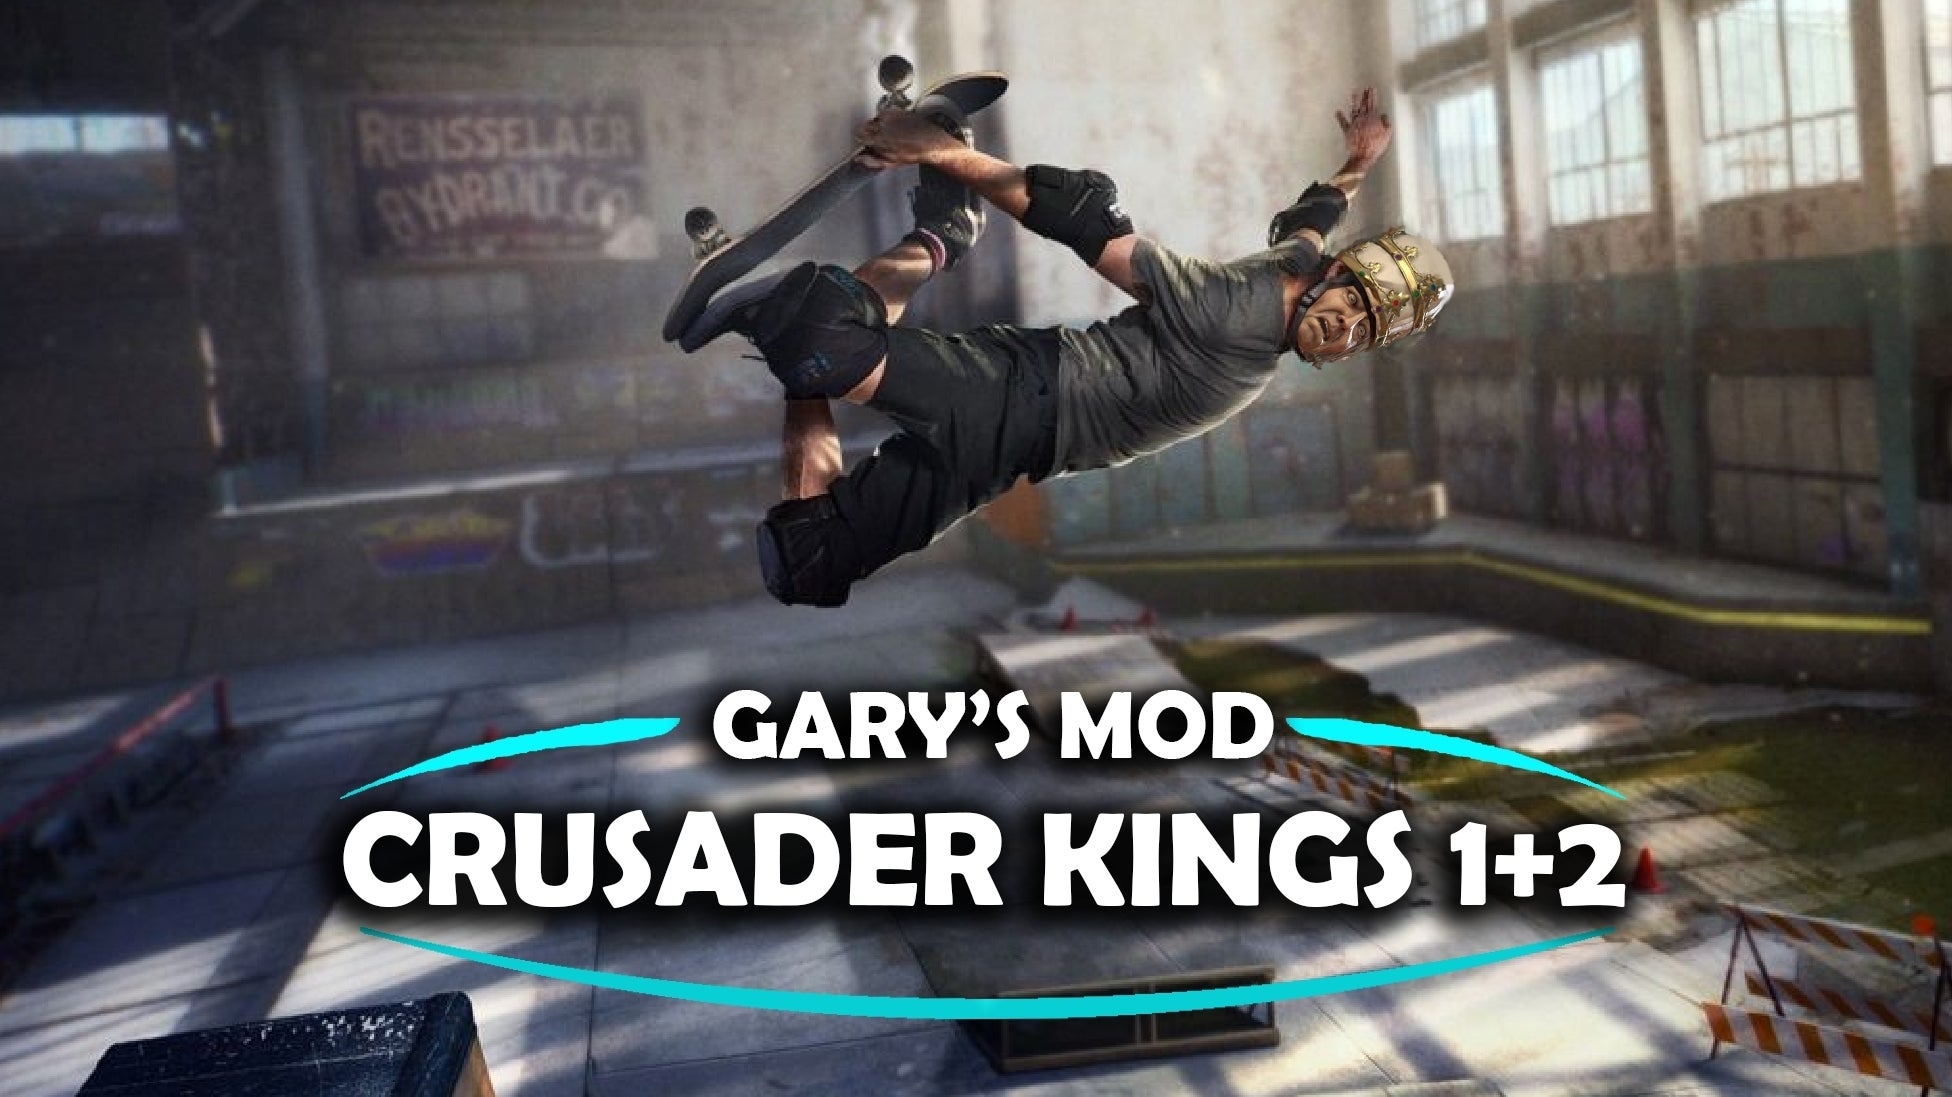 Immagine di Crusader Kings 3 e Tony Hawk's Pro Skater insieme in una mod tanto assurda quanto imperdibile